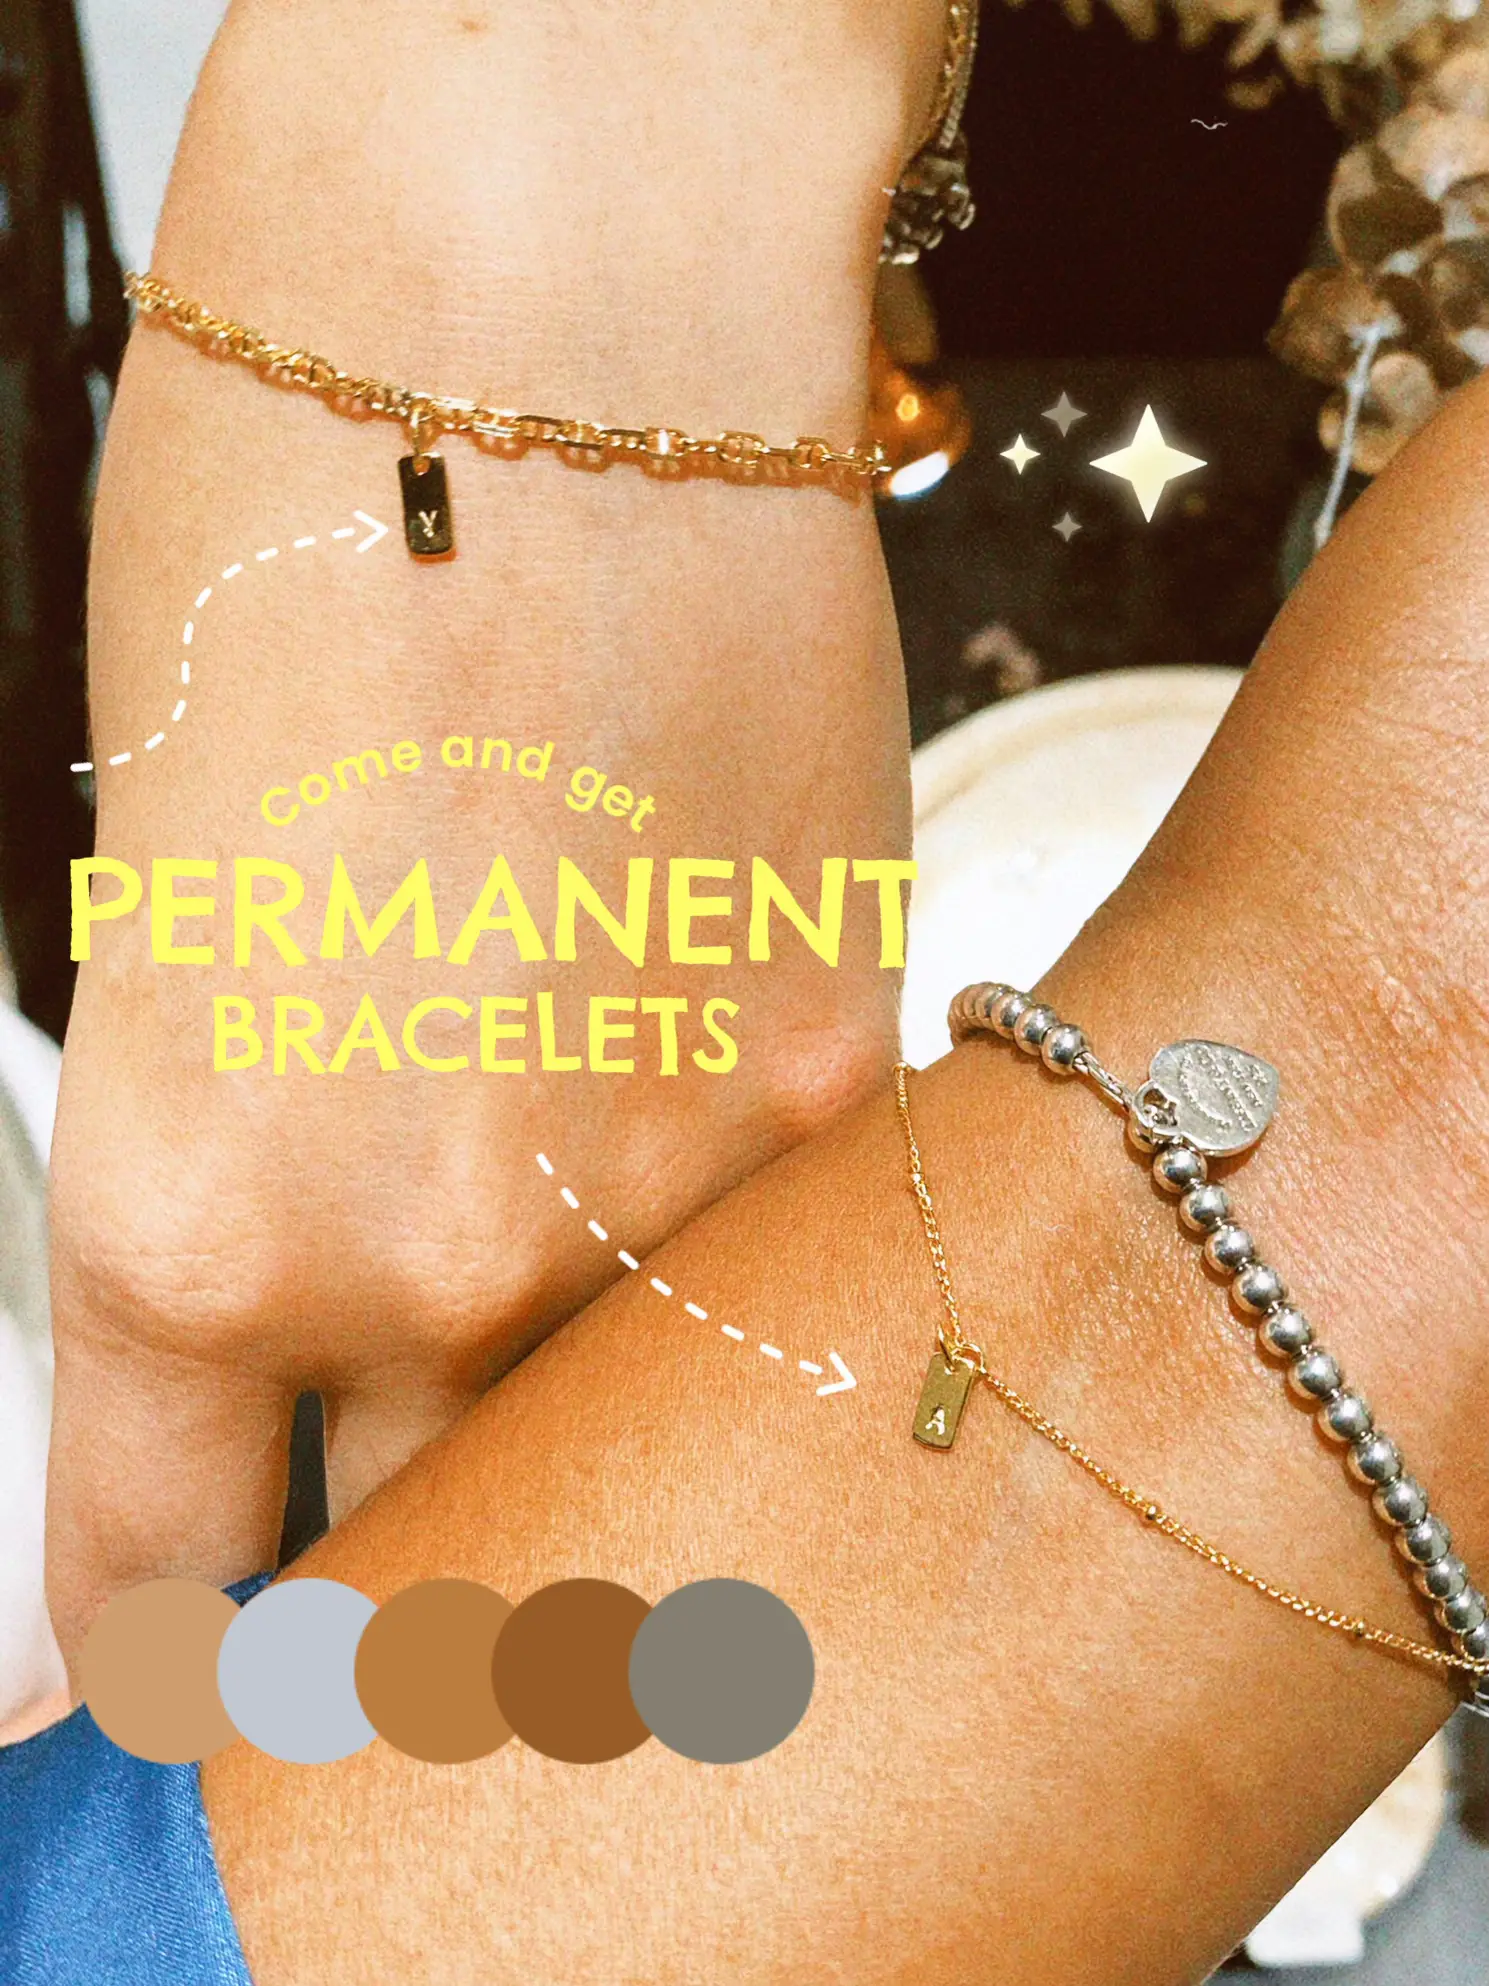 permanent bracelet kit - Lemon8 Search